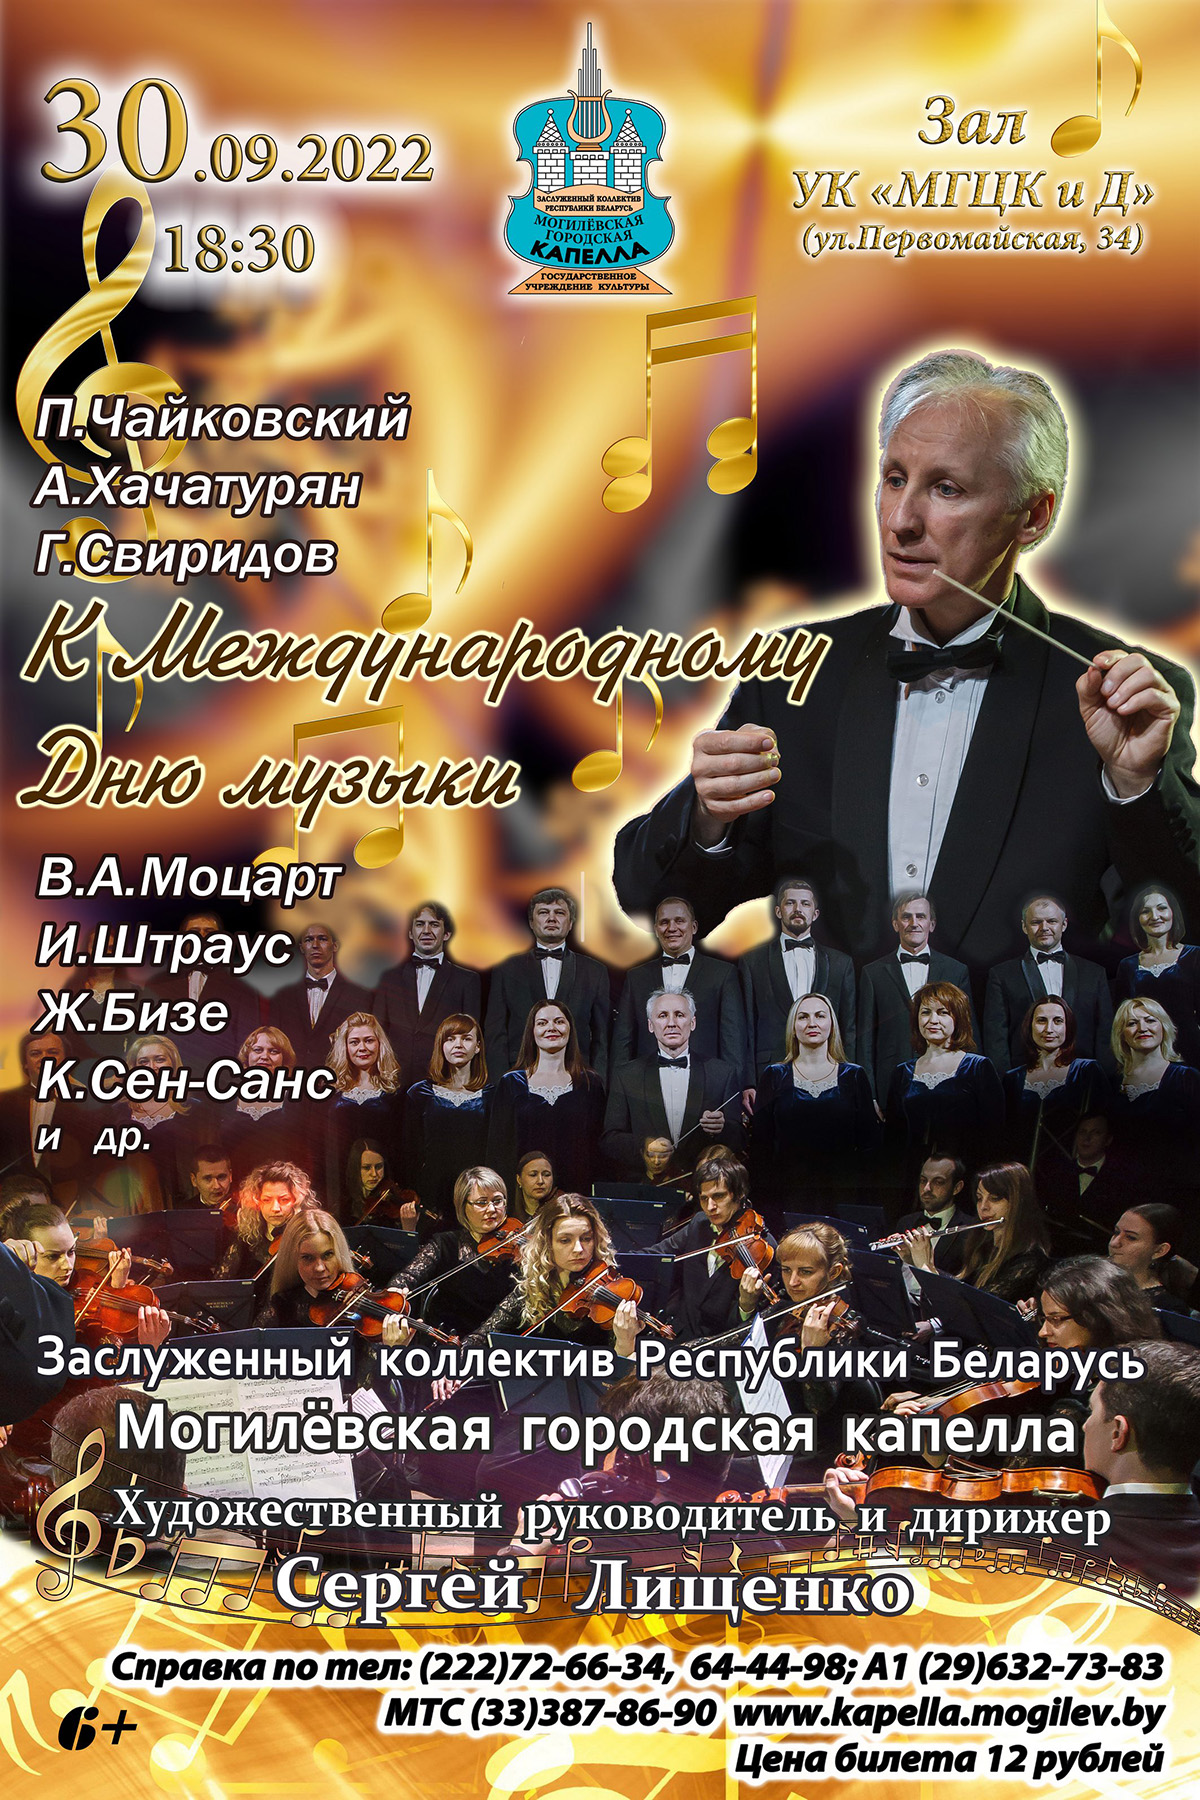 Могилевская городская капелла готовит концертную программу к Международному дню музыки